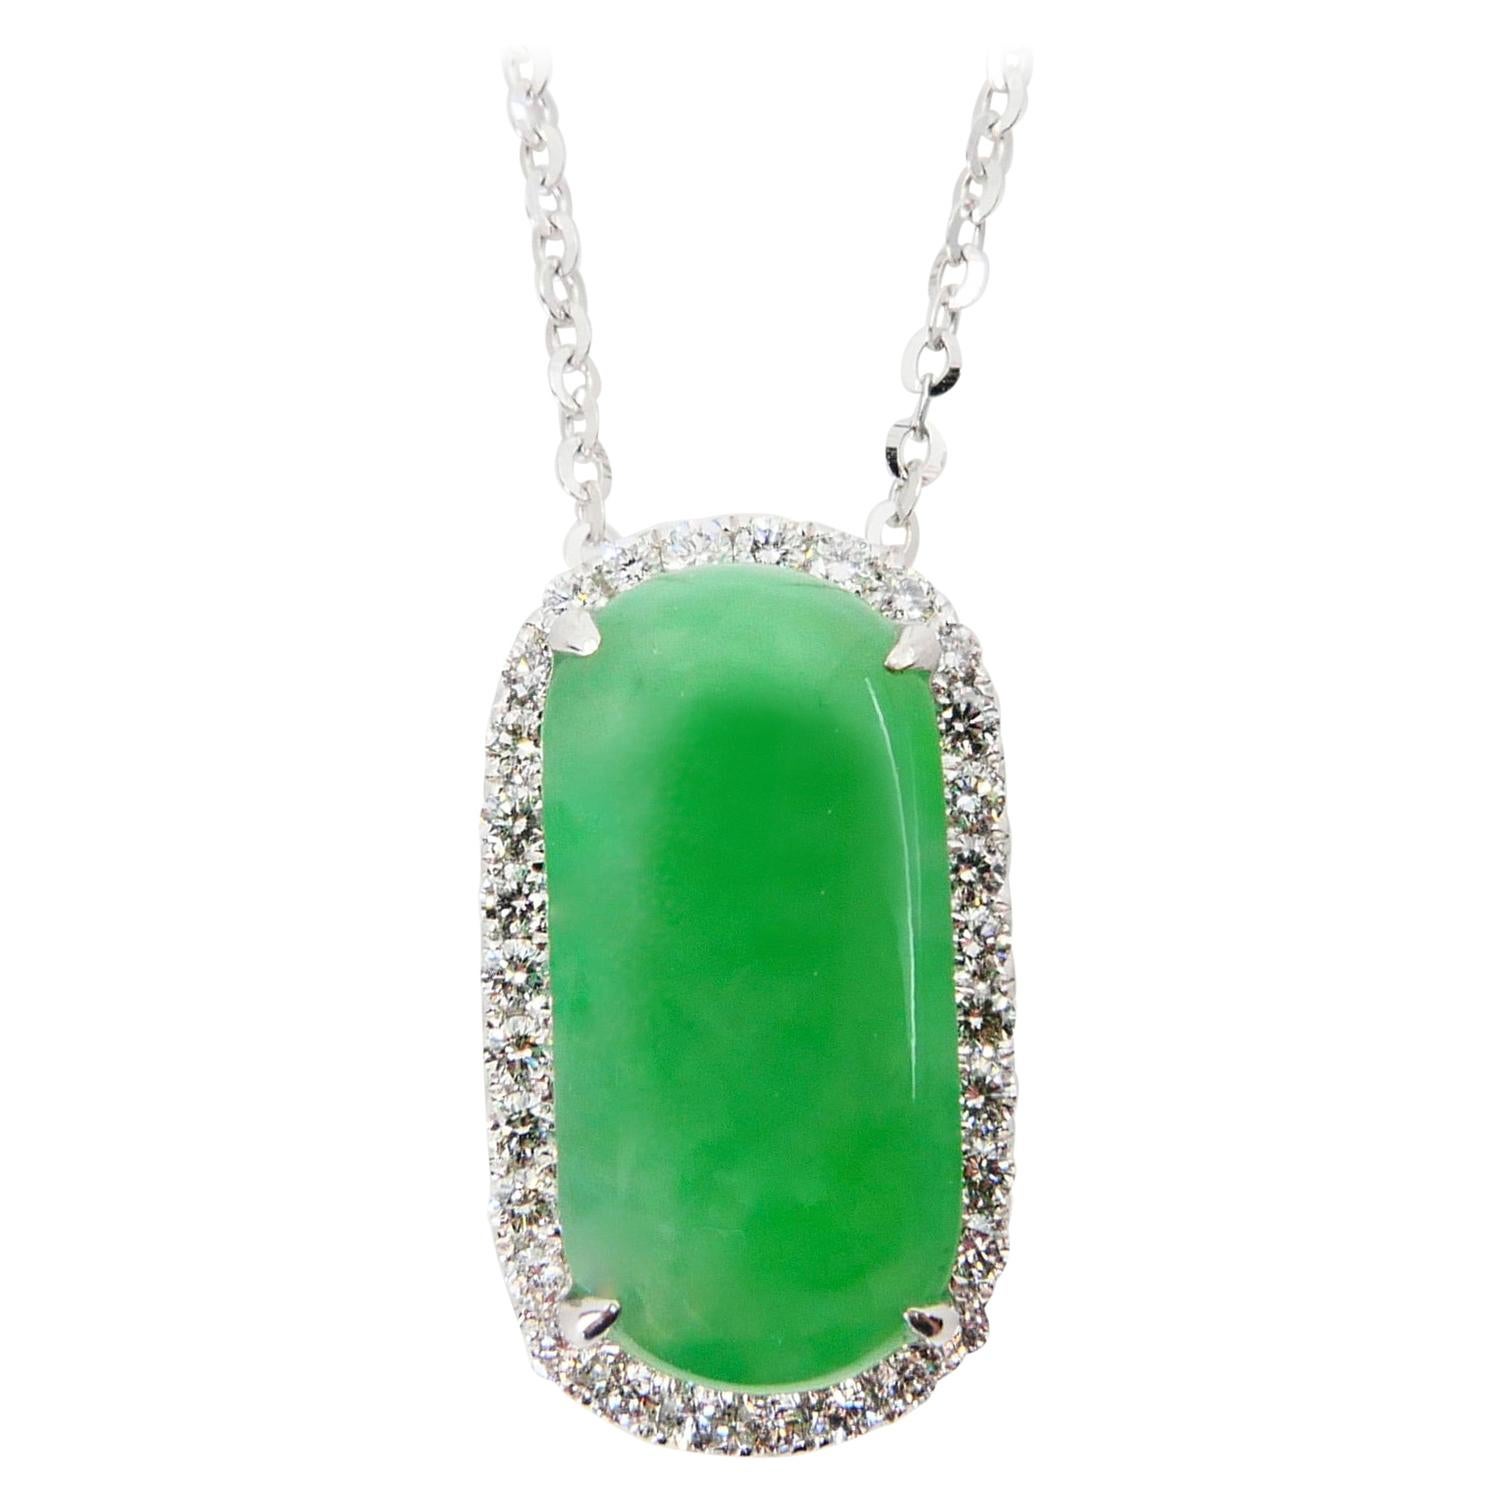 Certified Type A Jadeite Jade Diamond Pendant Drop Necklace, Apple Green Color